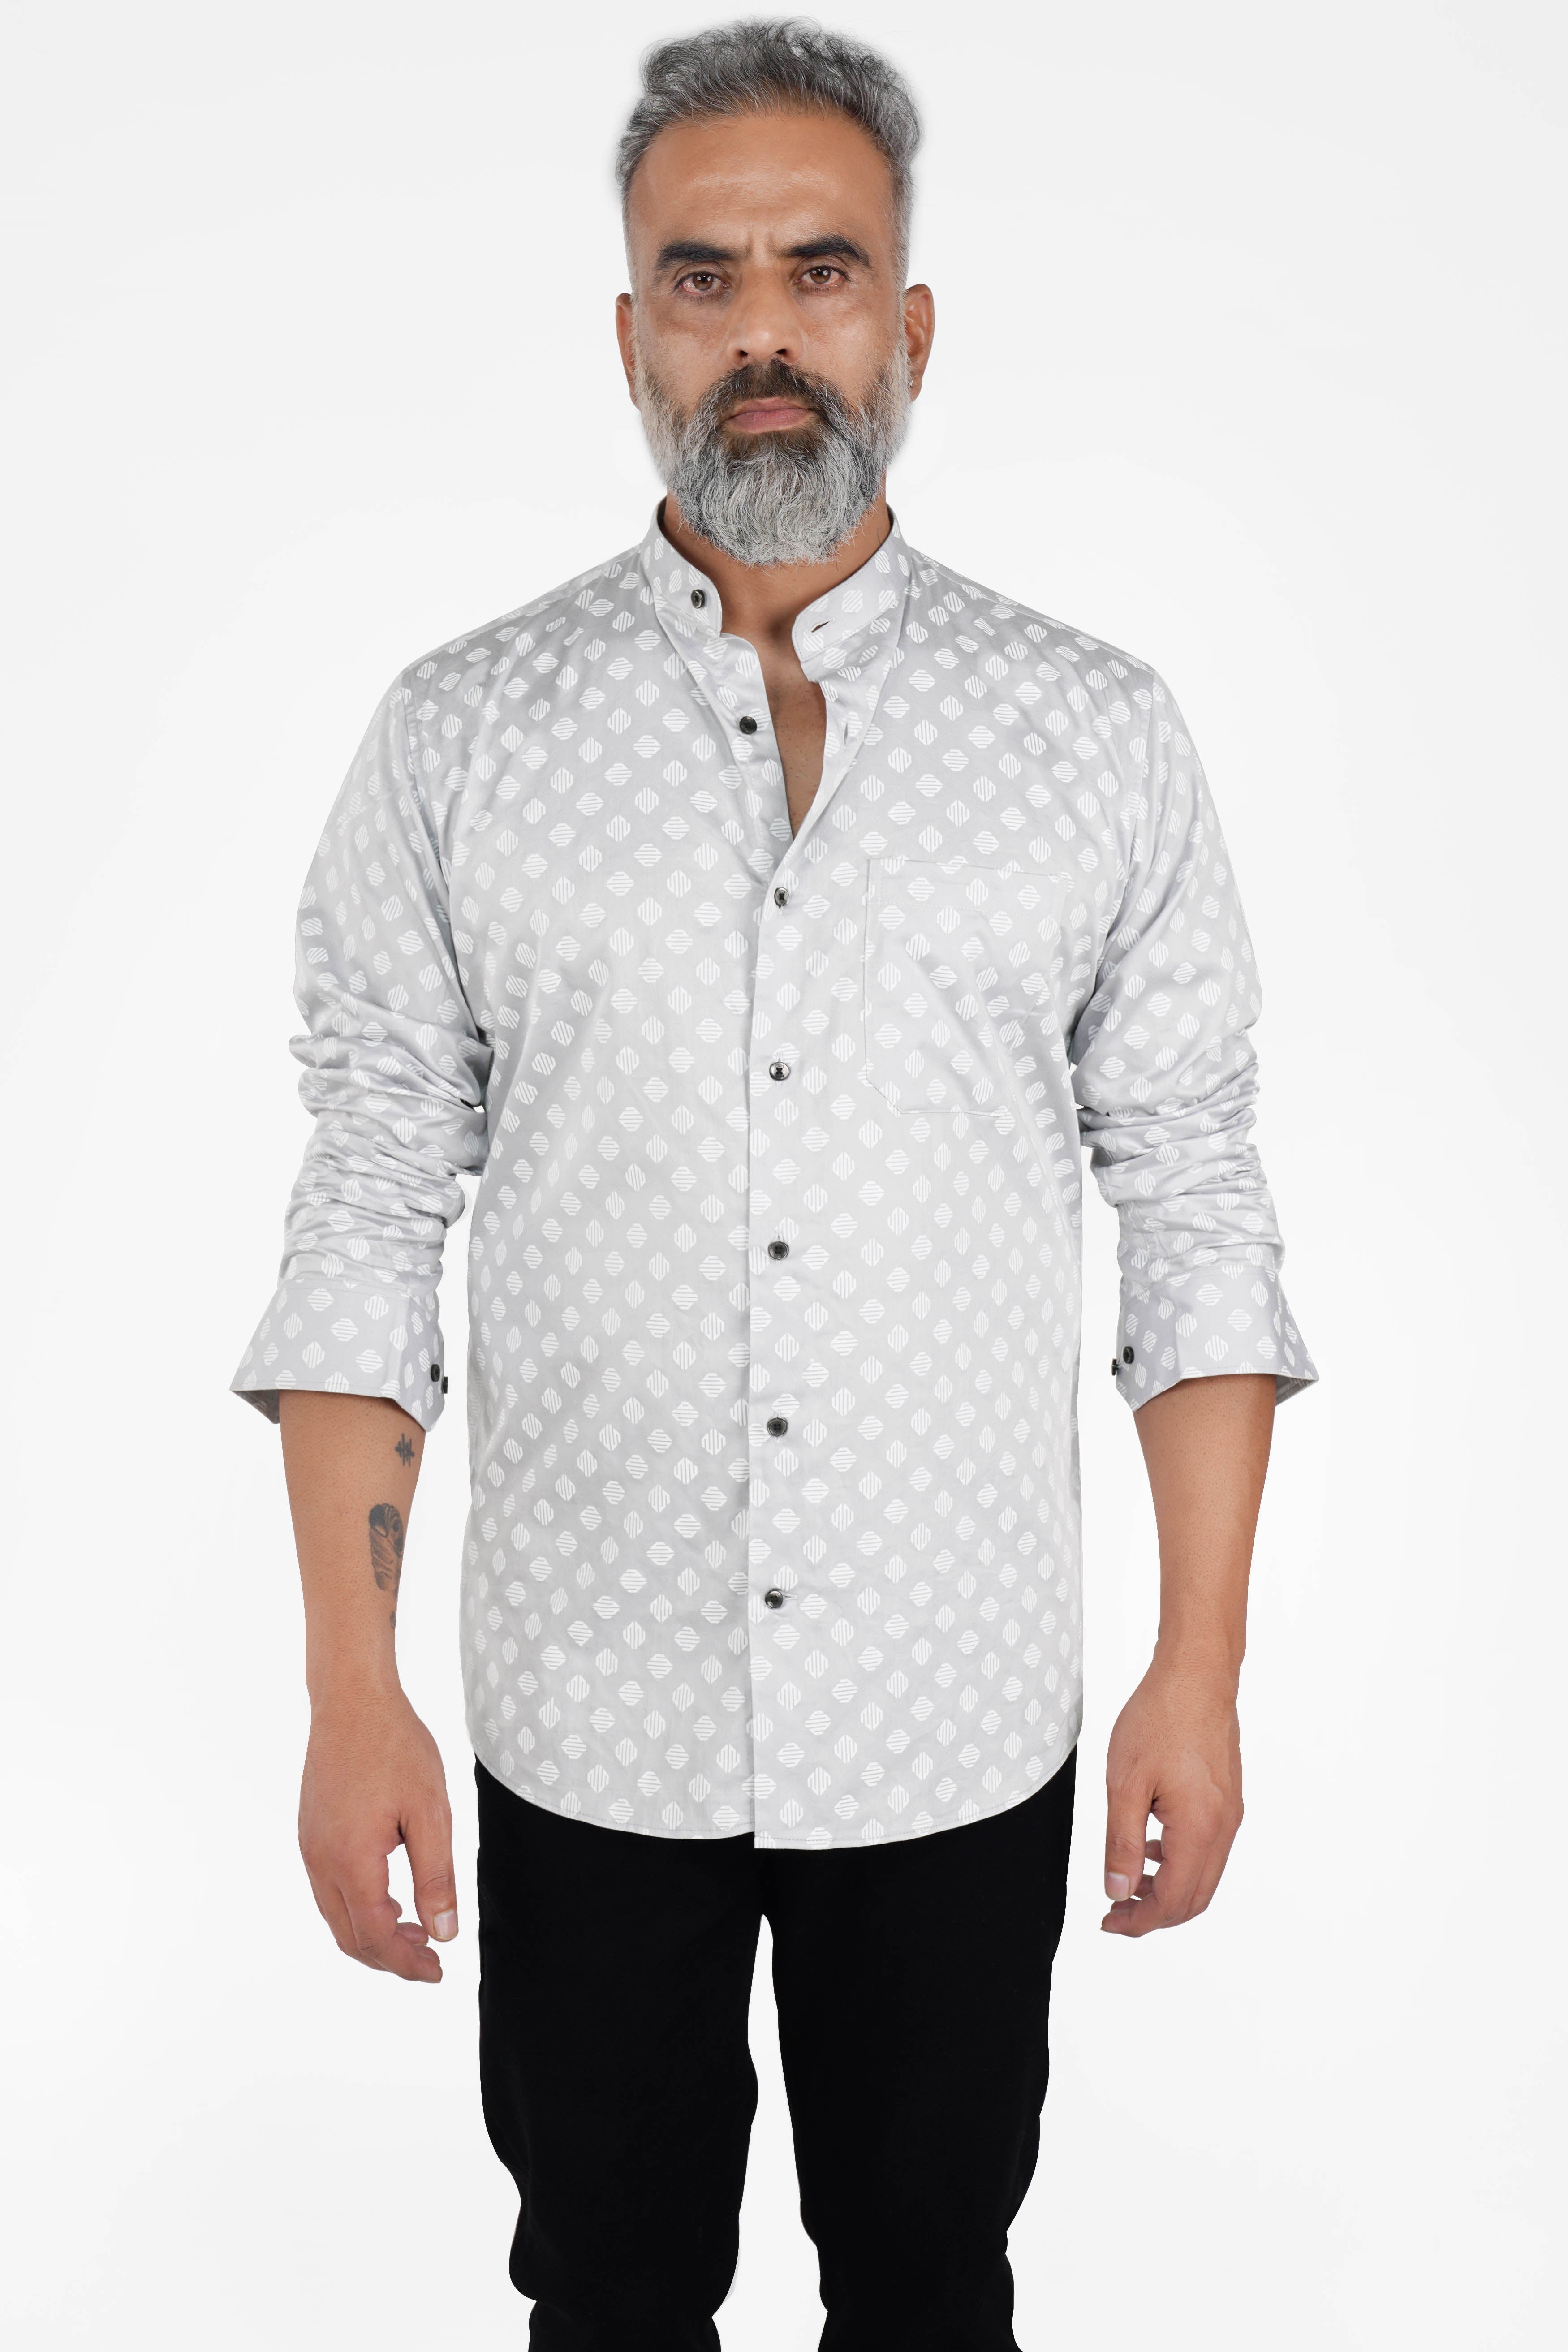 Timberwolf Gray with White Printed Super Soft Premium Cotton Shirt